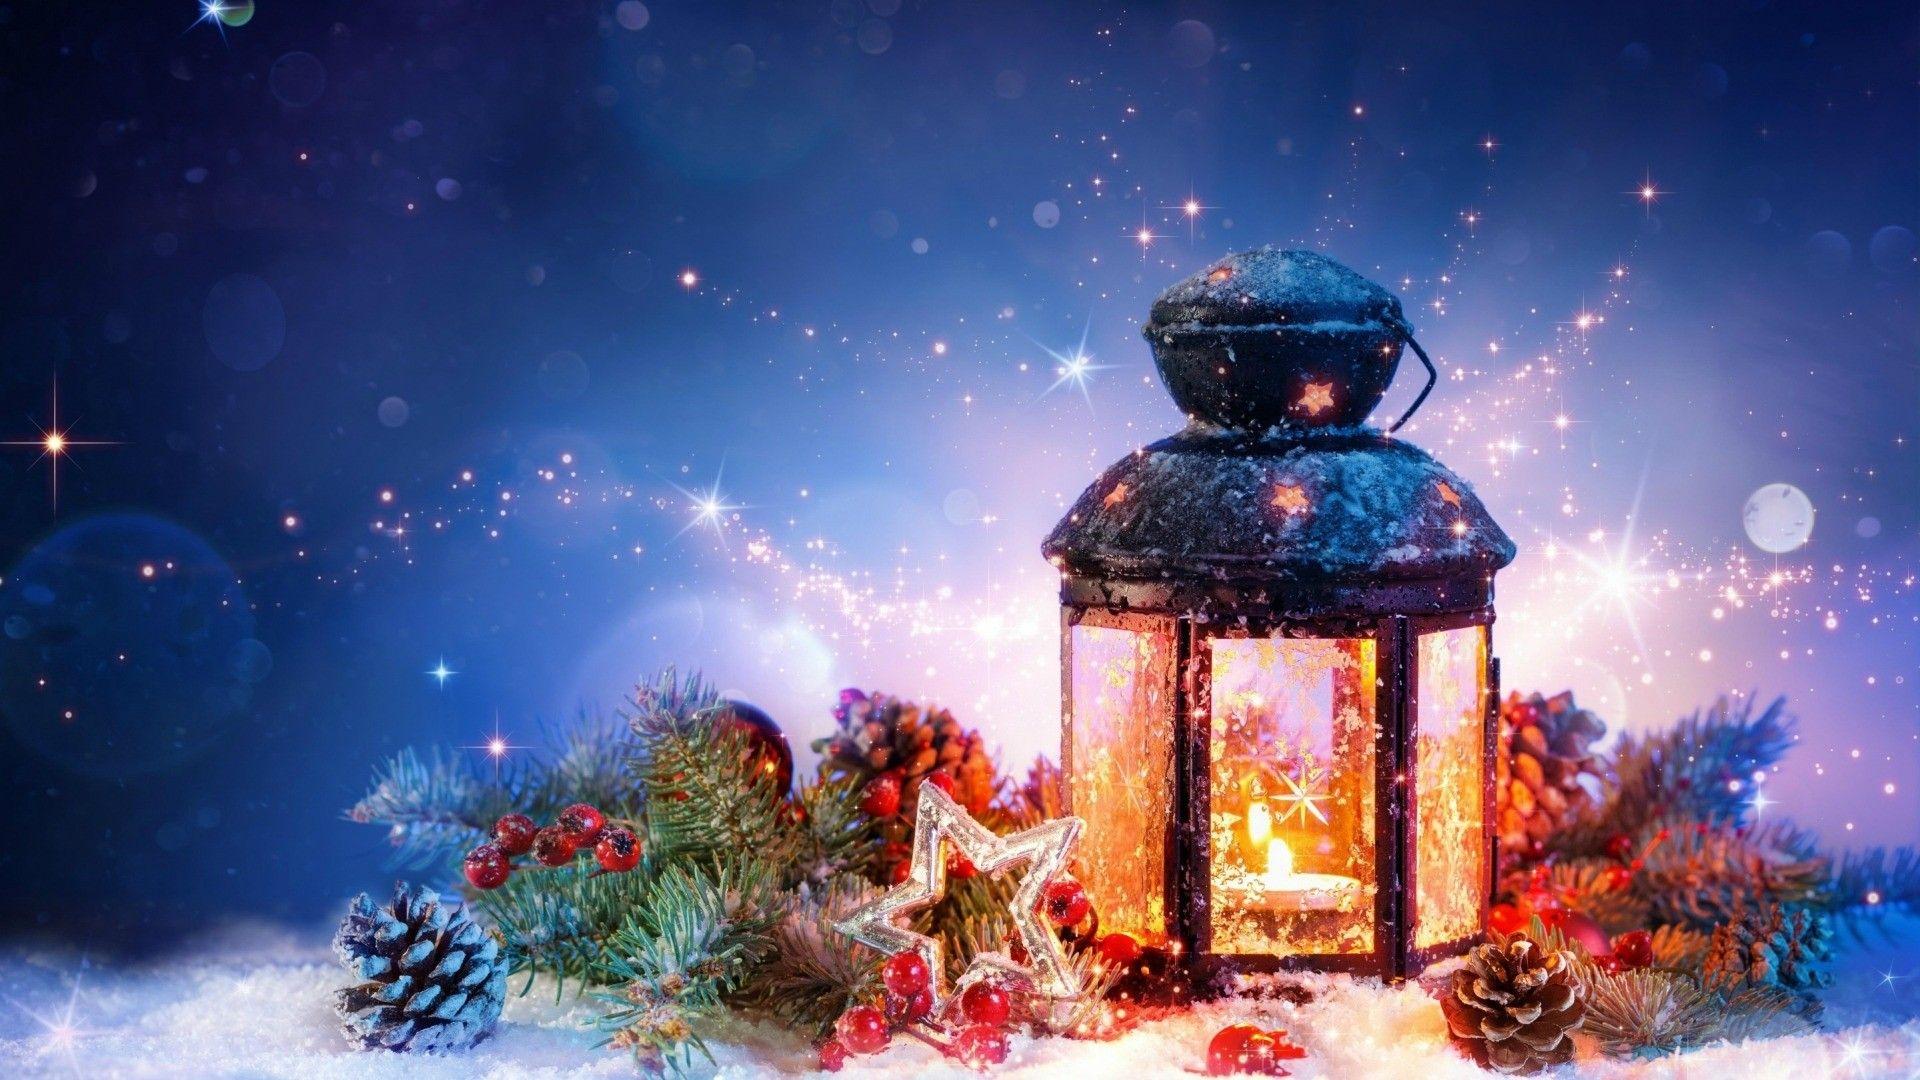 Hình ảnh nền đèn lồng Giáng Sinh sẽ đưa bạn vào không khí lễ hội, với những gì hoa anh đào đầu mùa mang lại. Hãy cùng tận hưởng một khung cảnh đầy ấm áp và ấn tượng qua hình nền đèn lồng Giáng Sinh tuyệt đẹp này.